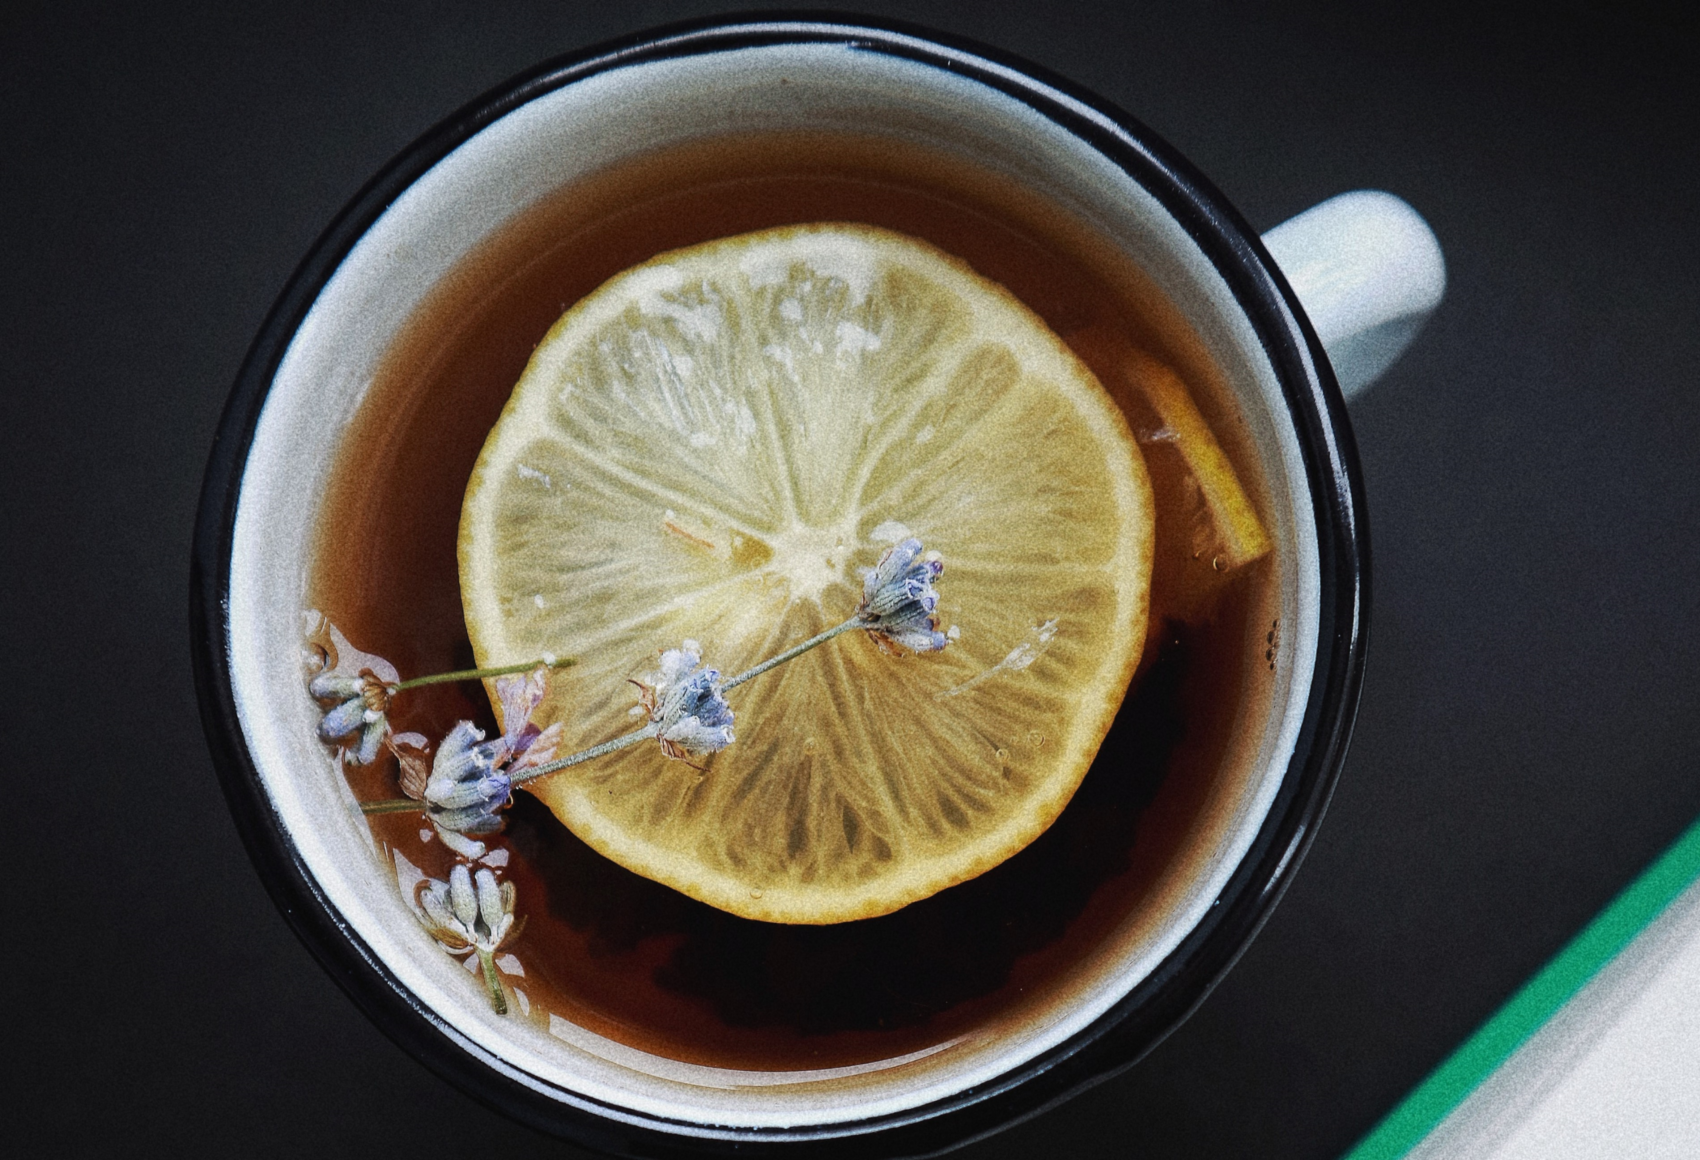  Ilustrasi teh hijau dan lemon. (Dok. Olenka Sergienko dari Pexels)